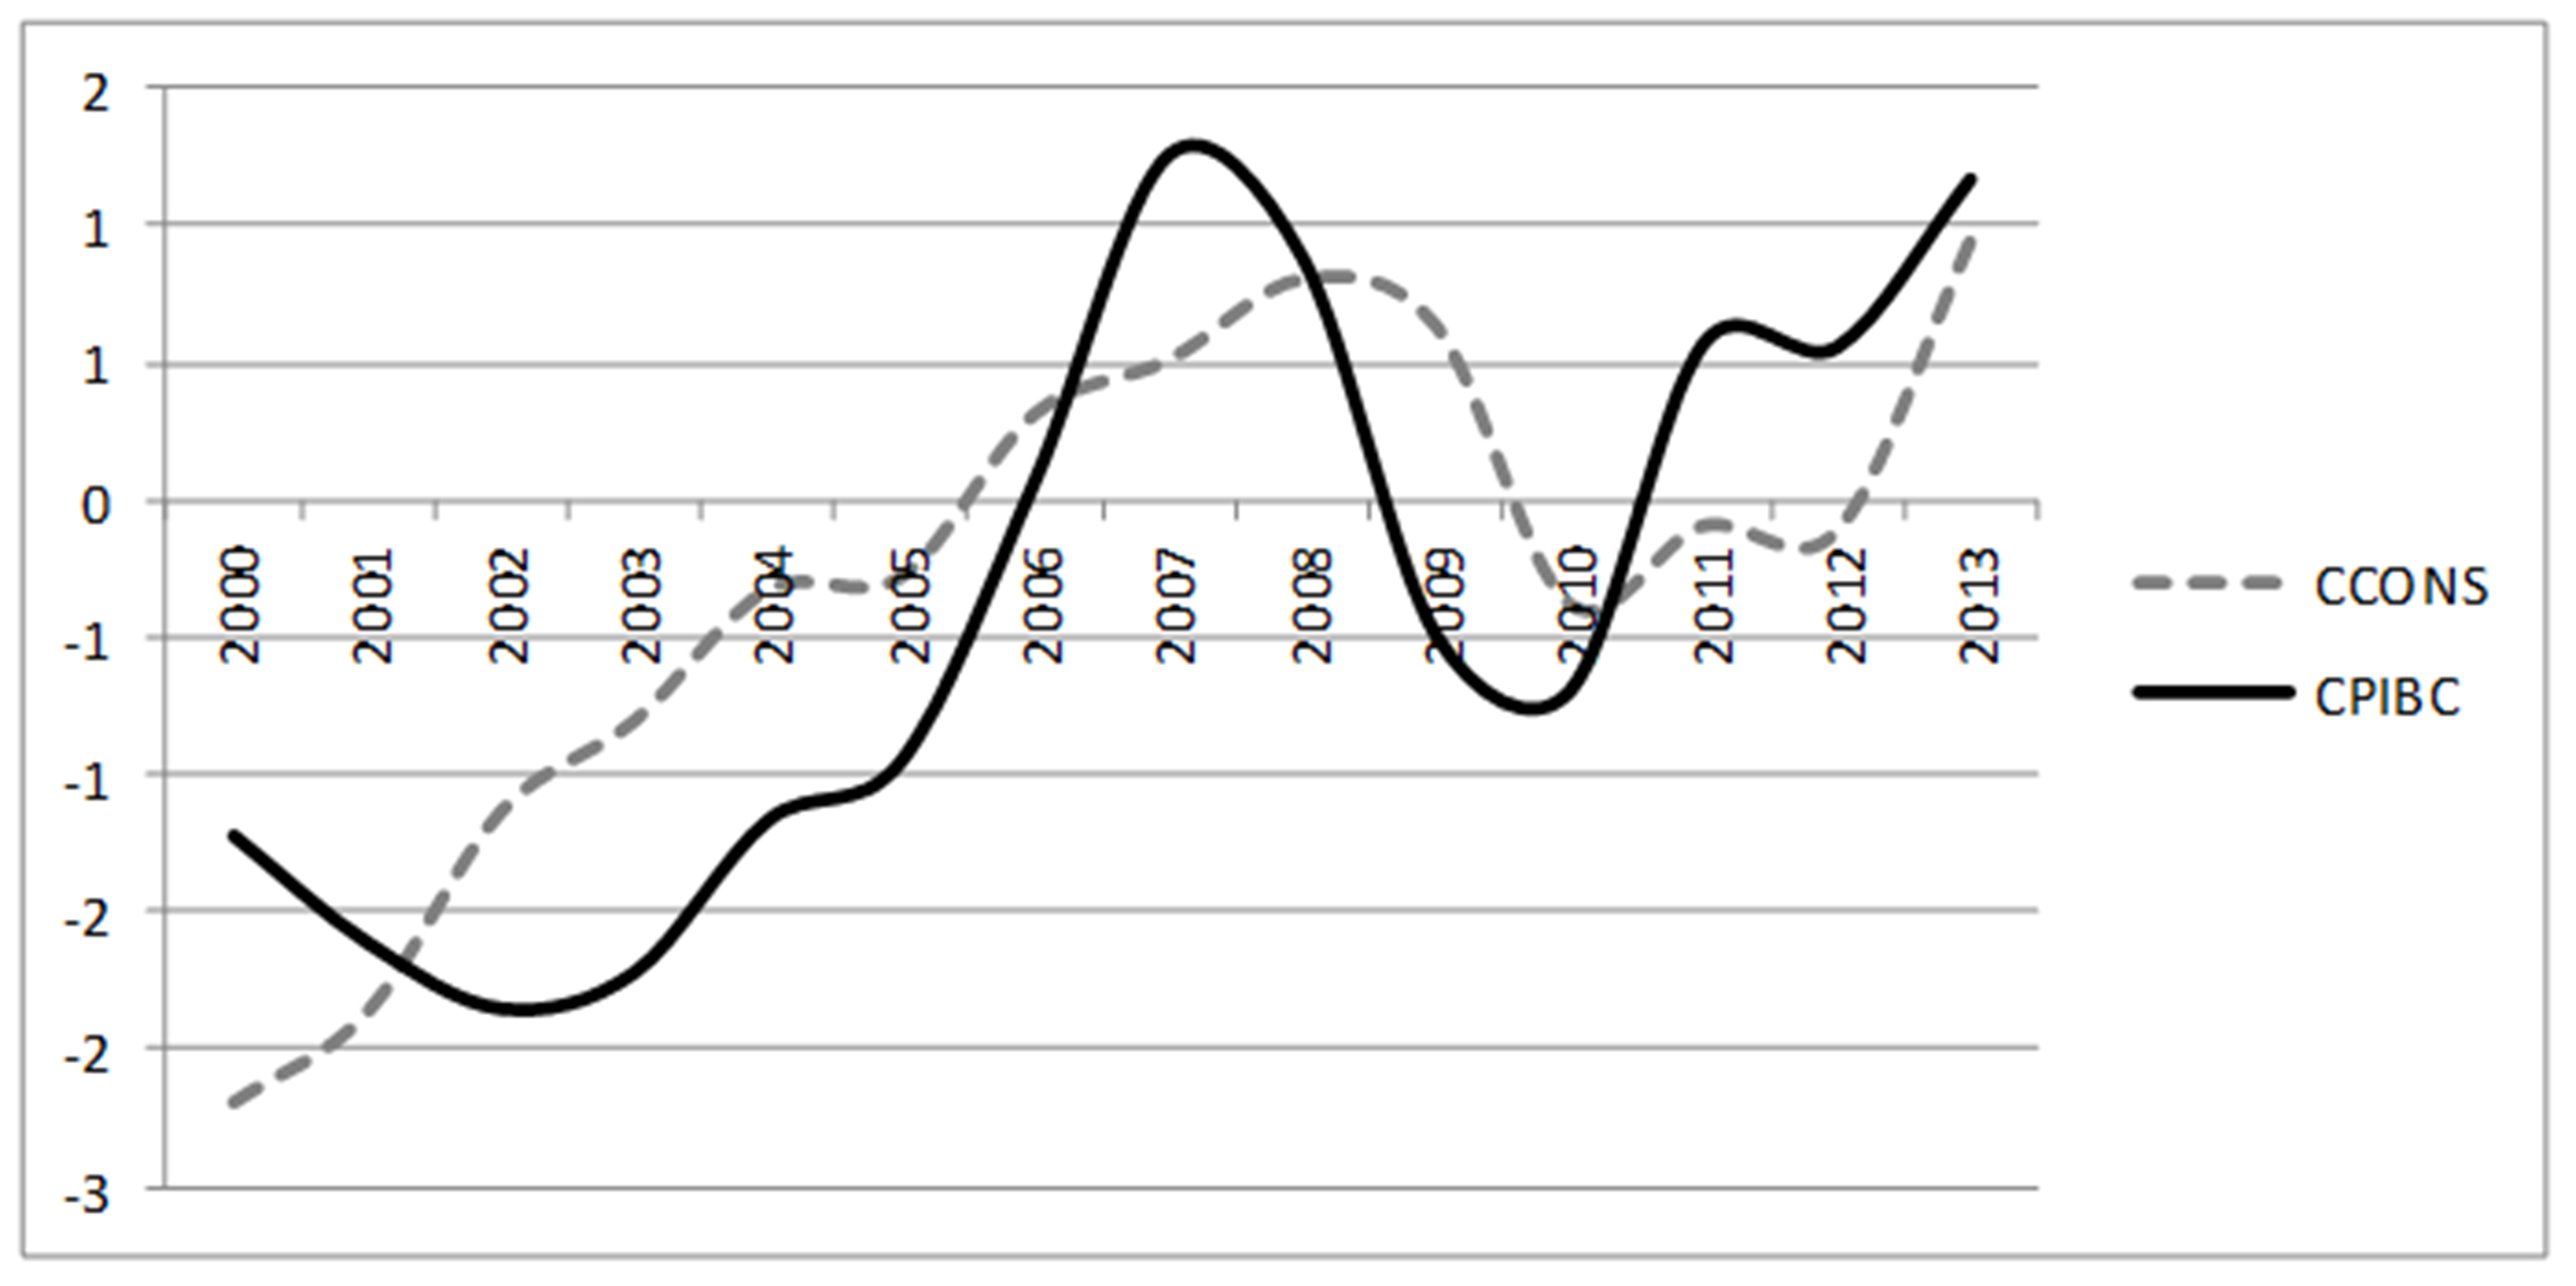 Aplicación de filtro de Hodrick-Prescott
al ciclo del sector de la construcción en el periodo de 2000 al 2013